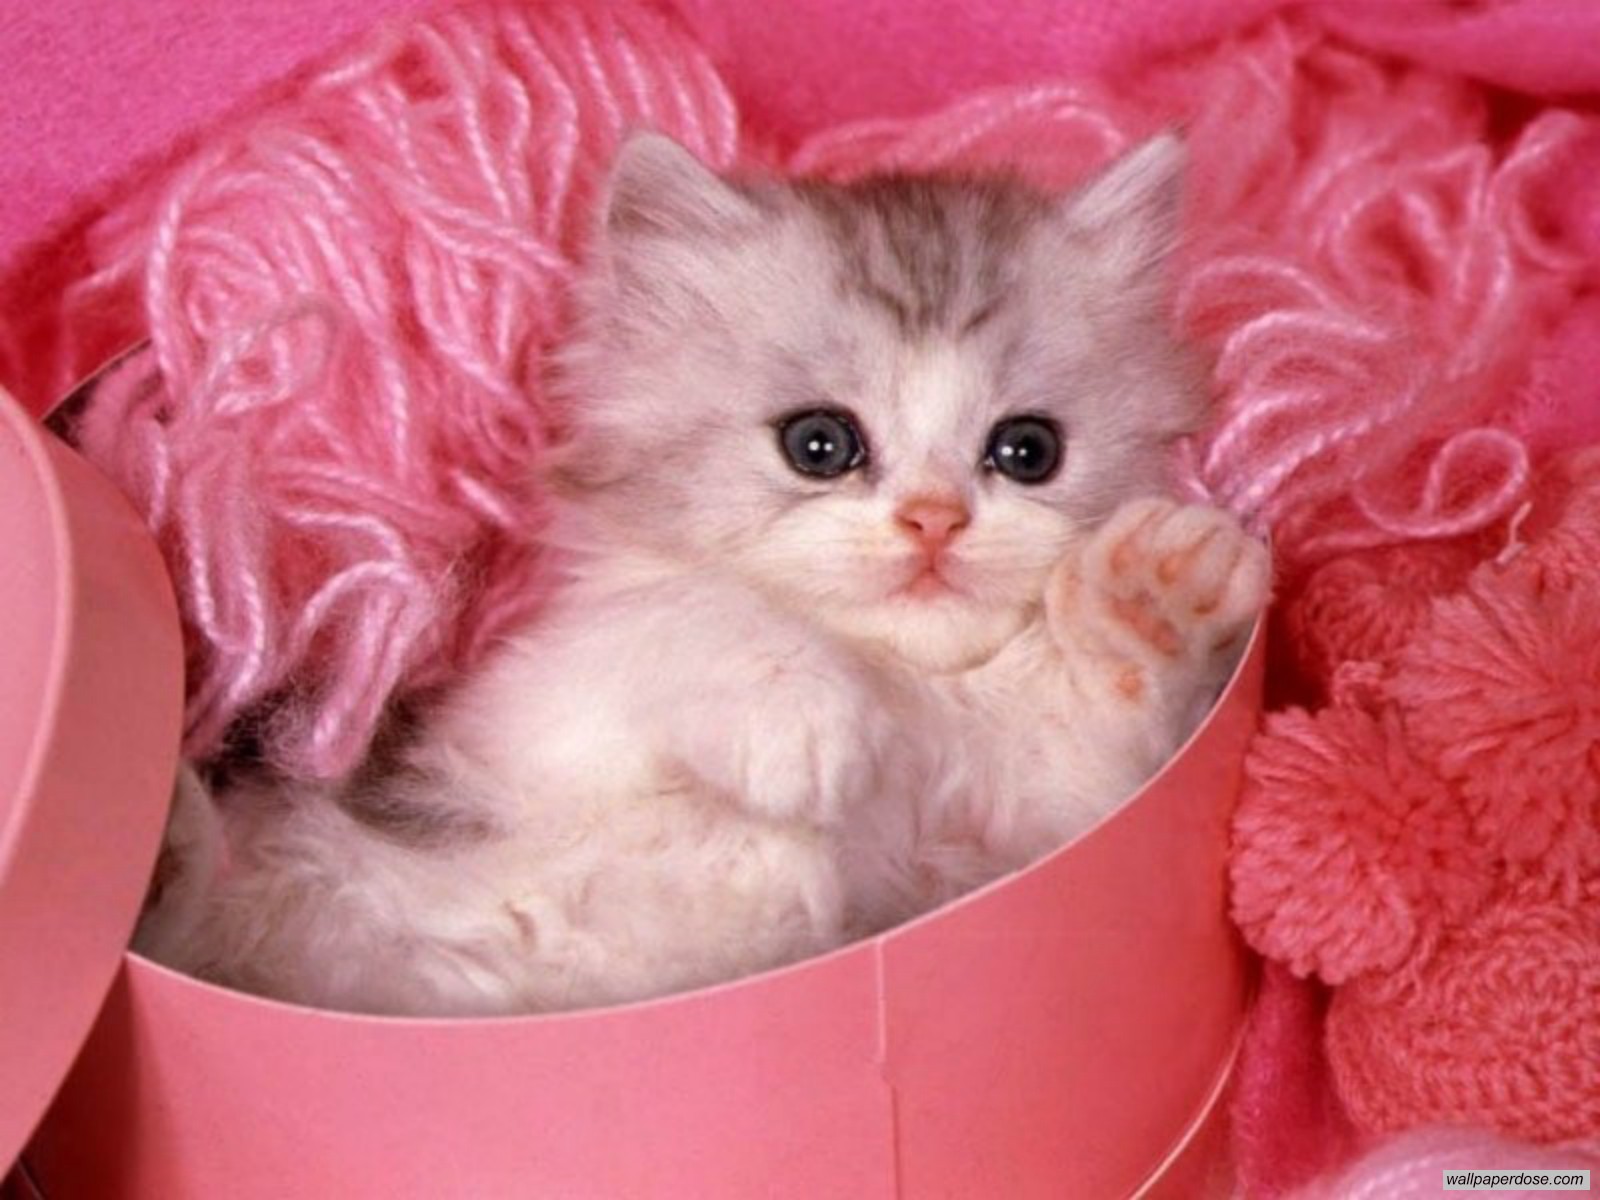 Kitten pretty in pink!